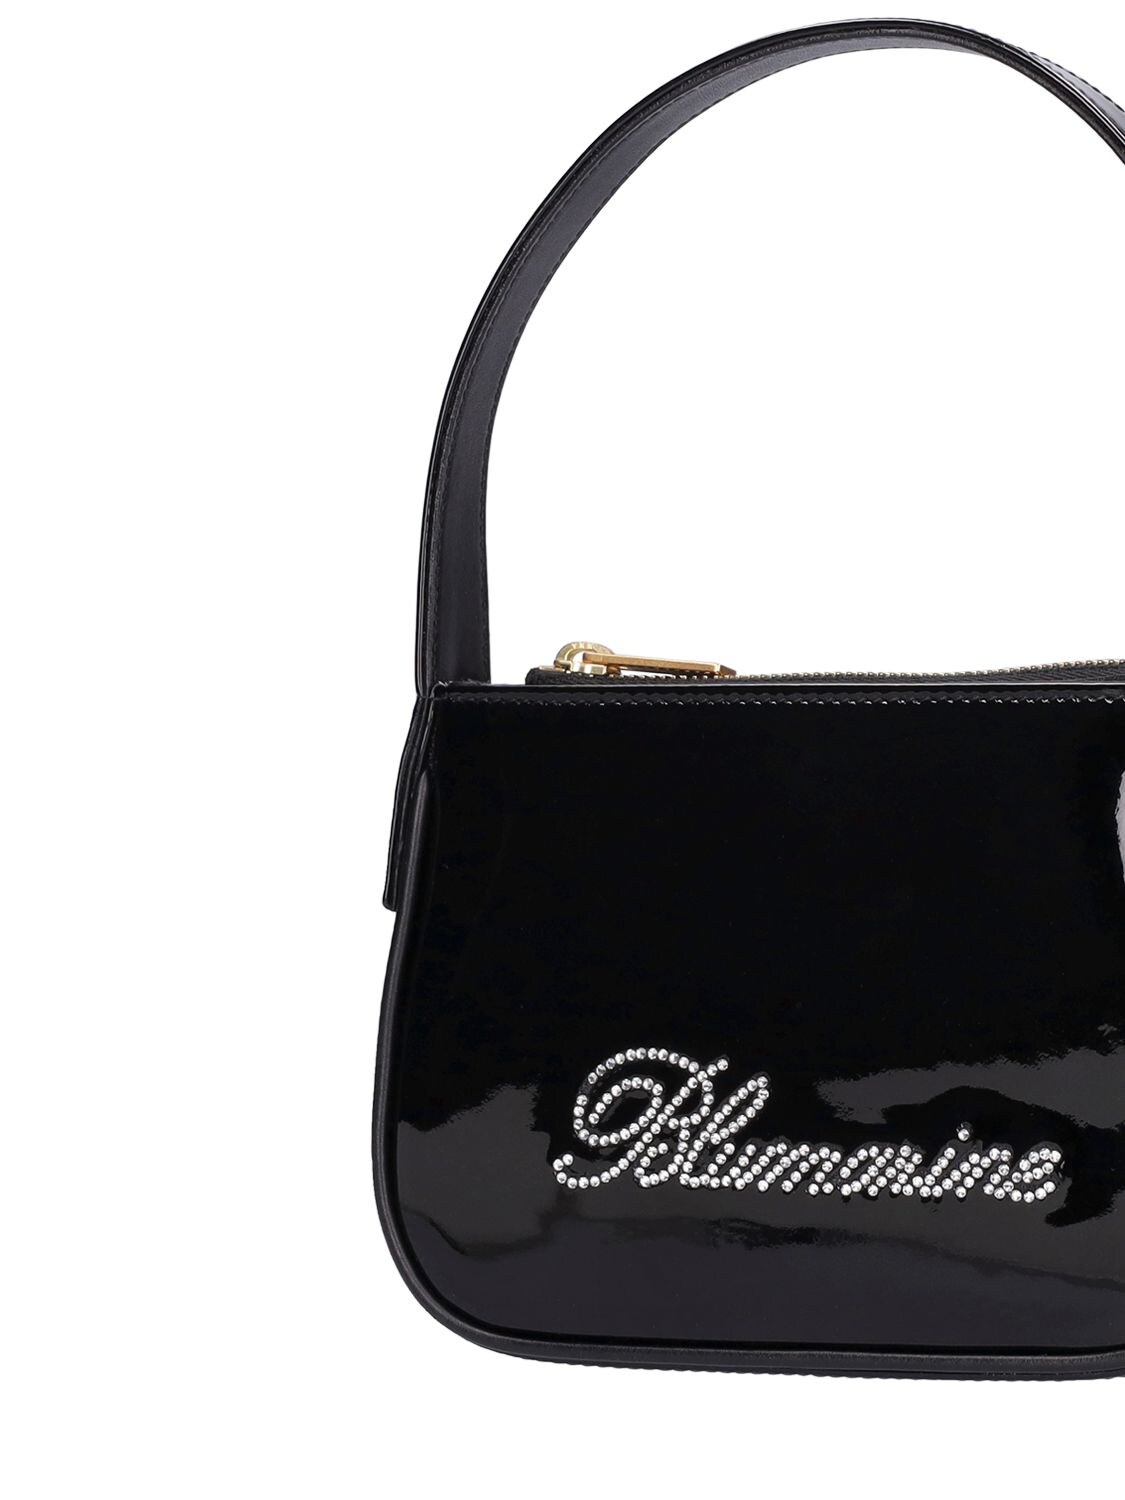 Blumarine Regular Kiss Me Bag in Patent Leather